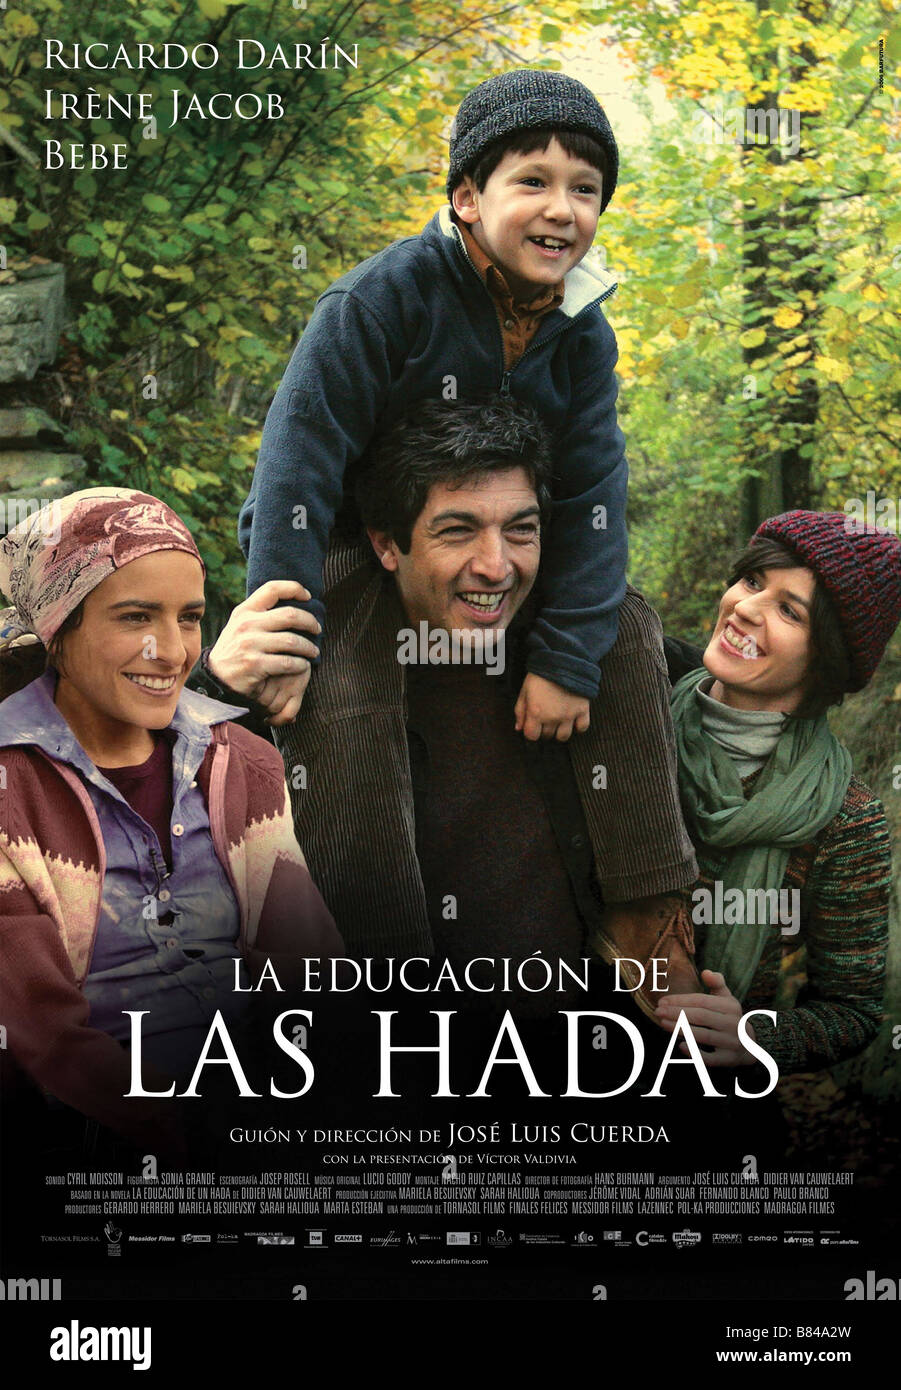 La educación de Las Hadas La educación de Las Hadas (2006) Argentinien, Spanien Affiche/Poster Bebe, Ricardo Darín, Irène Jacob Regie: José Luis Cuerda Stockfoto